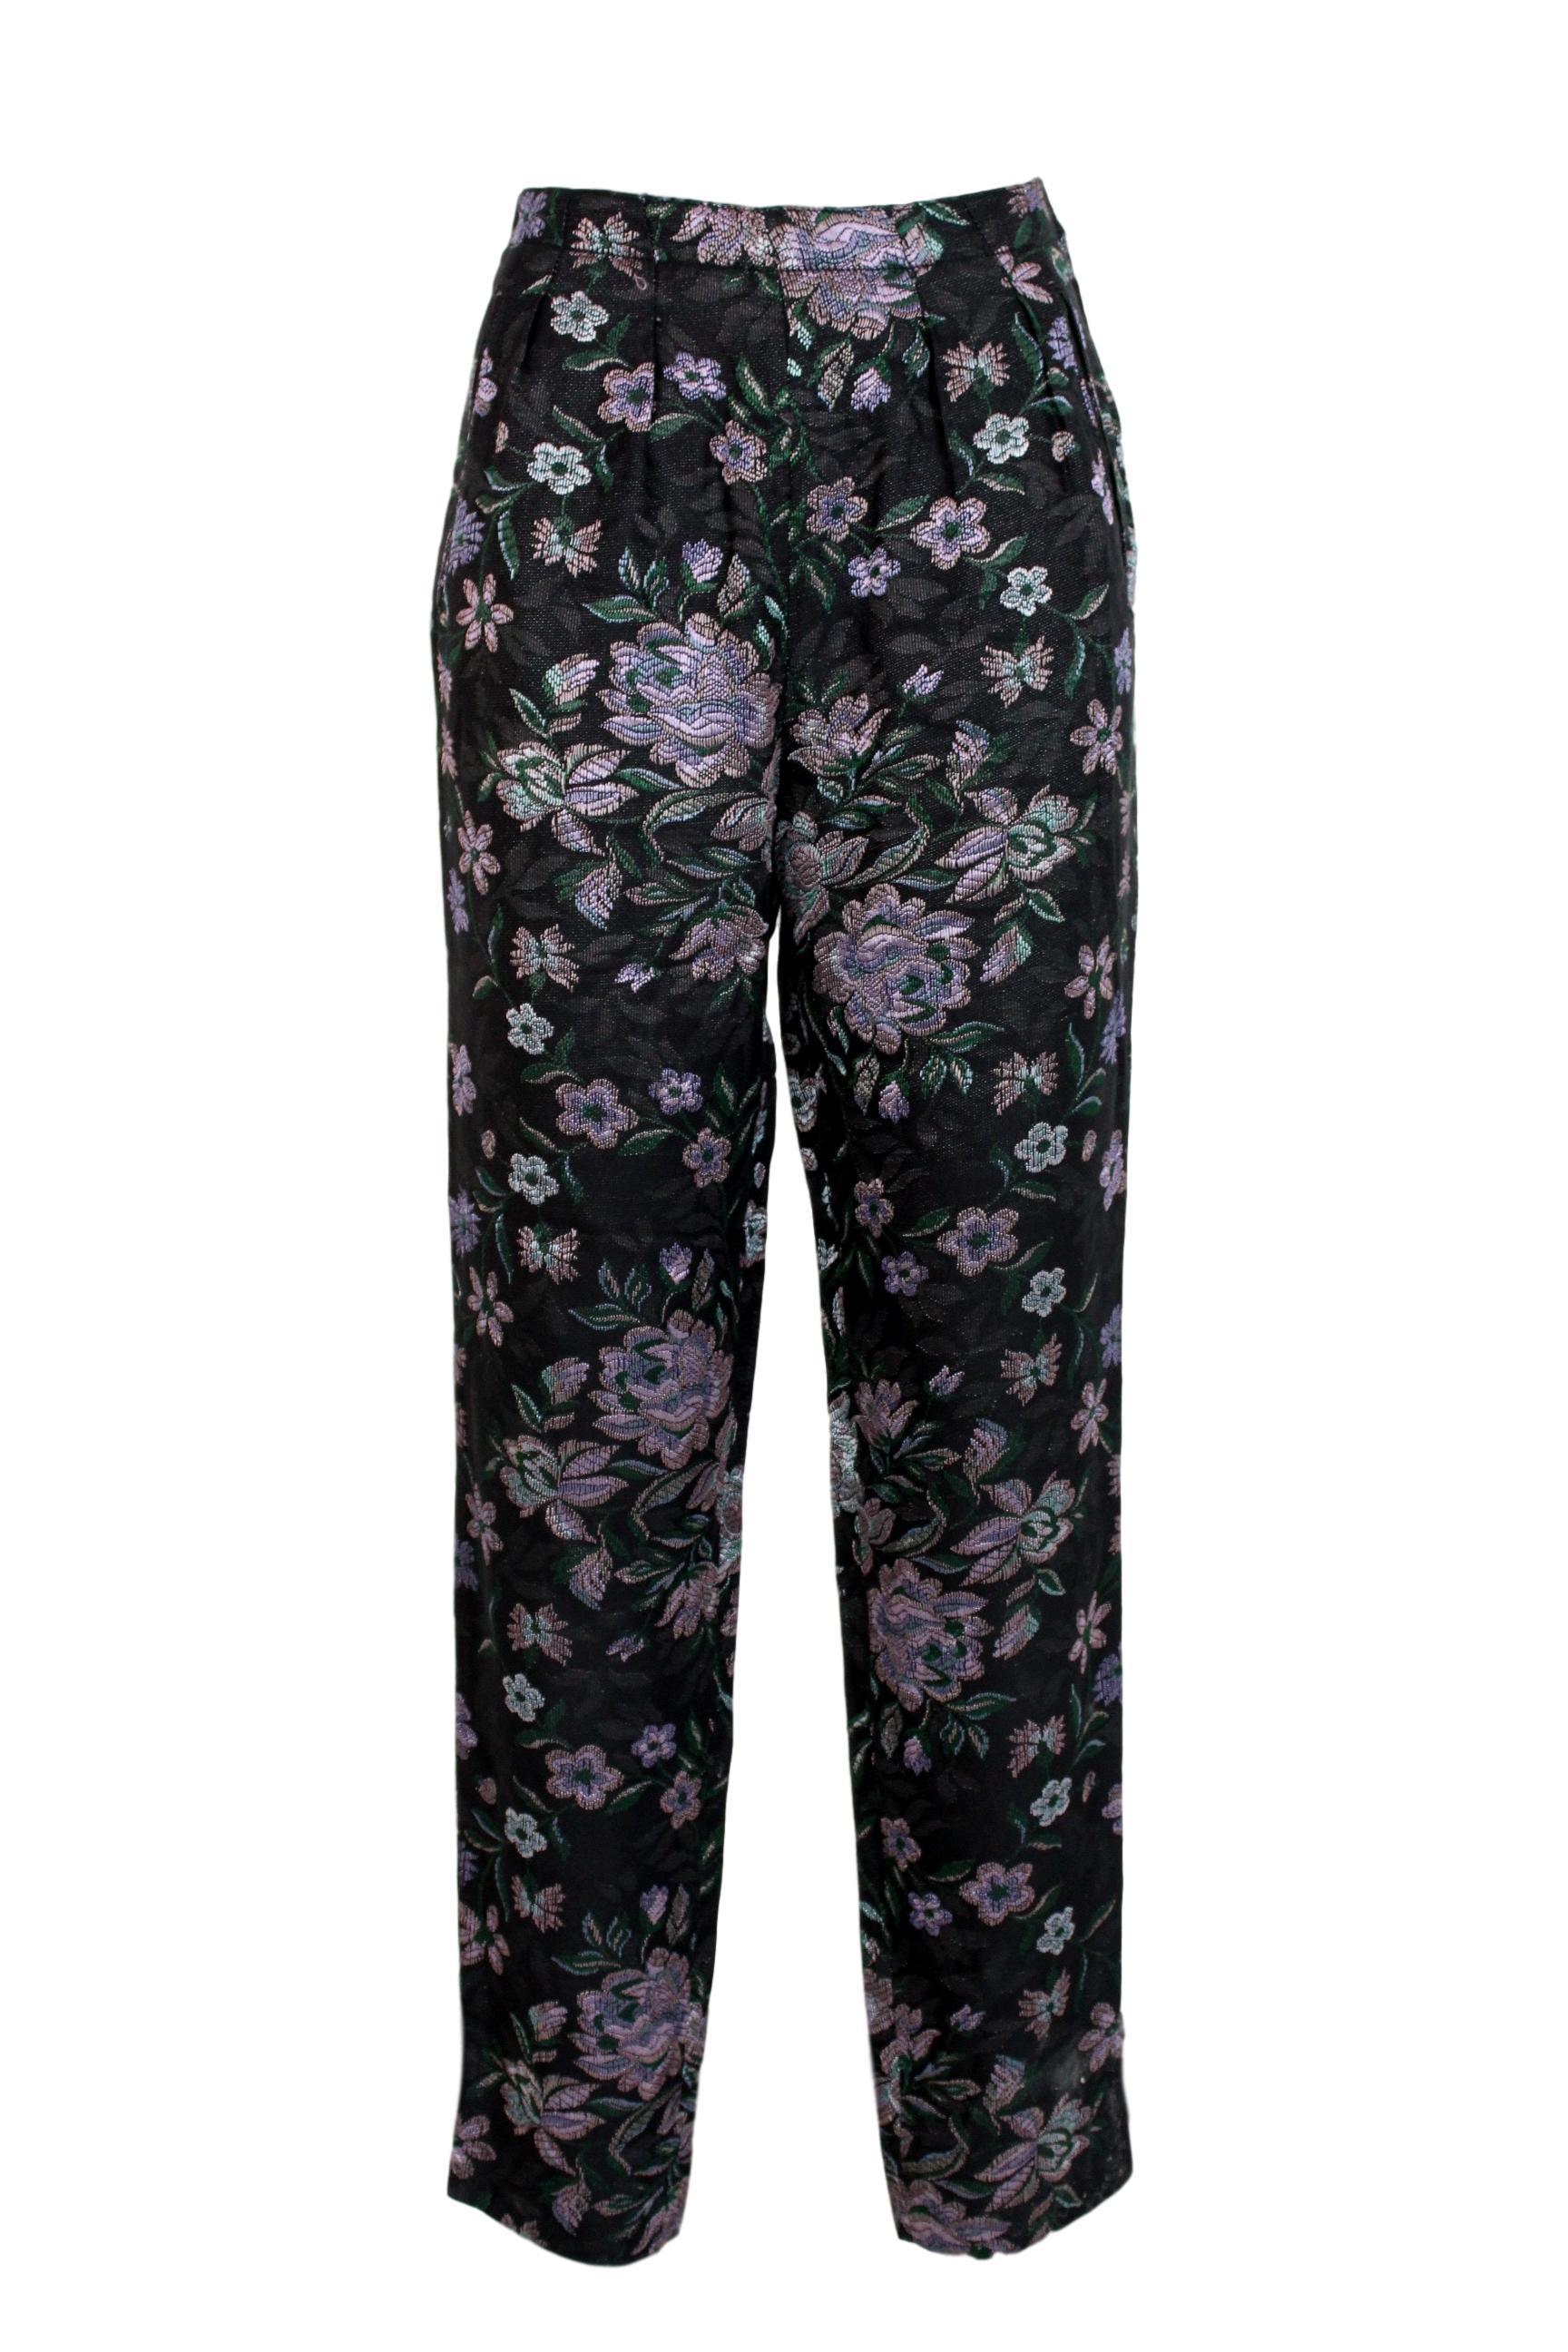 Emporio Armani Black Pink Cotton Damask Floral Pants Suit 5